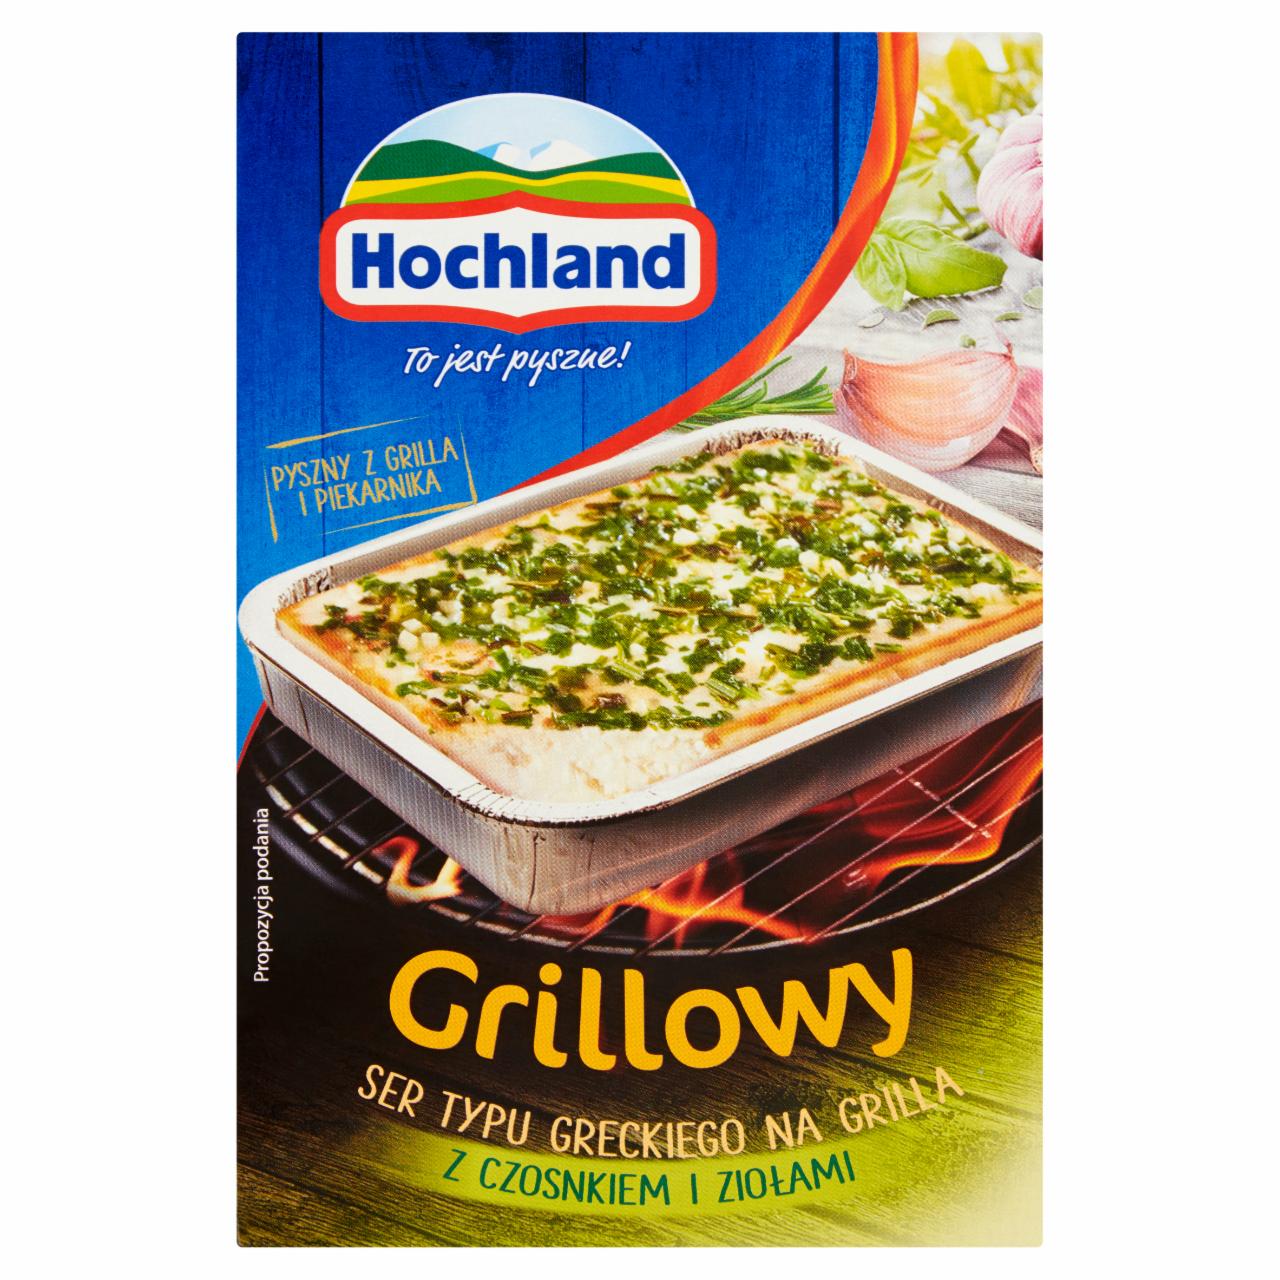 Zdjęcia - Hochland Grillowy ser typu greckiego z czosnkiem i ziołami 150 g